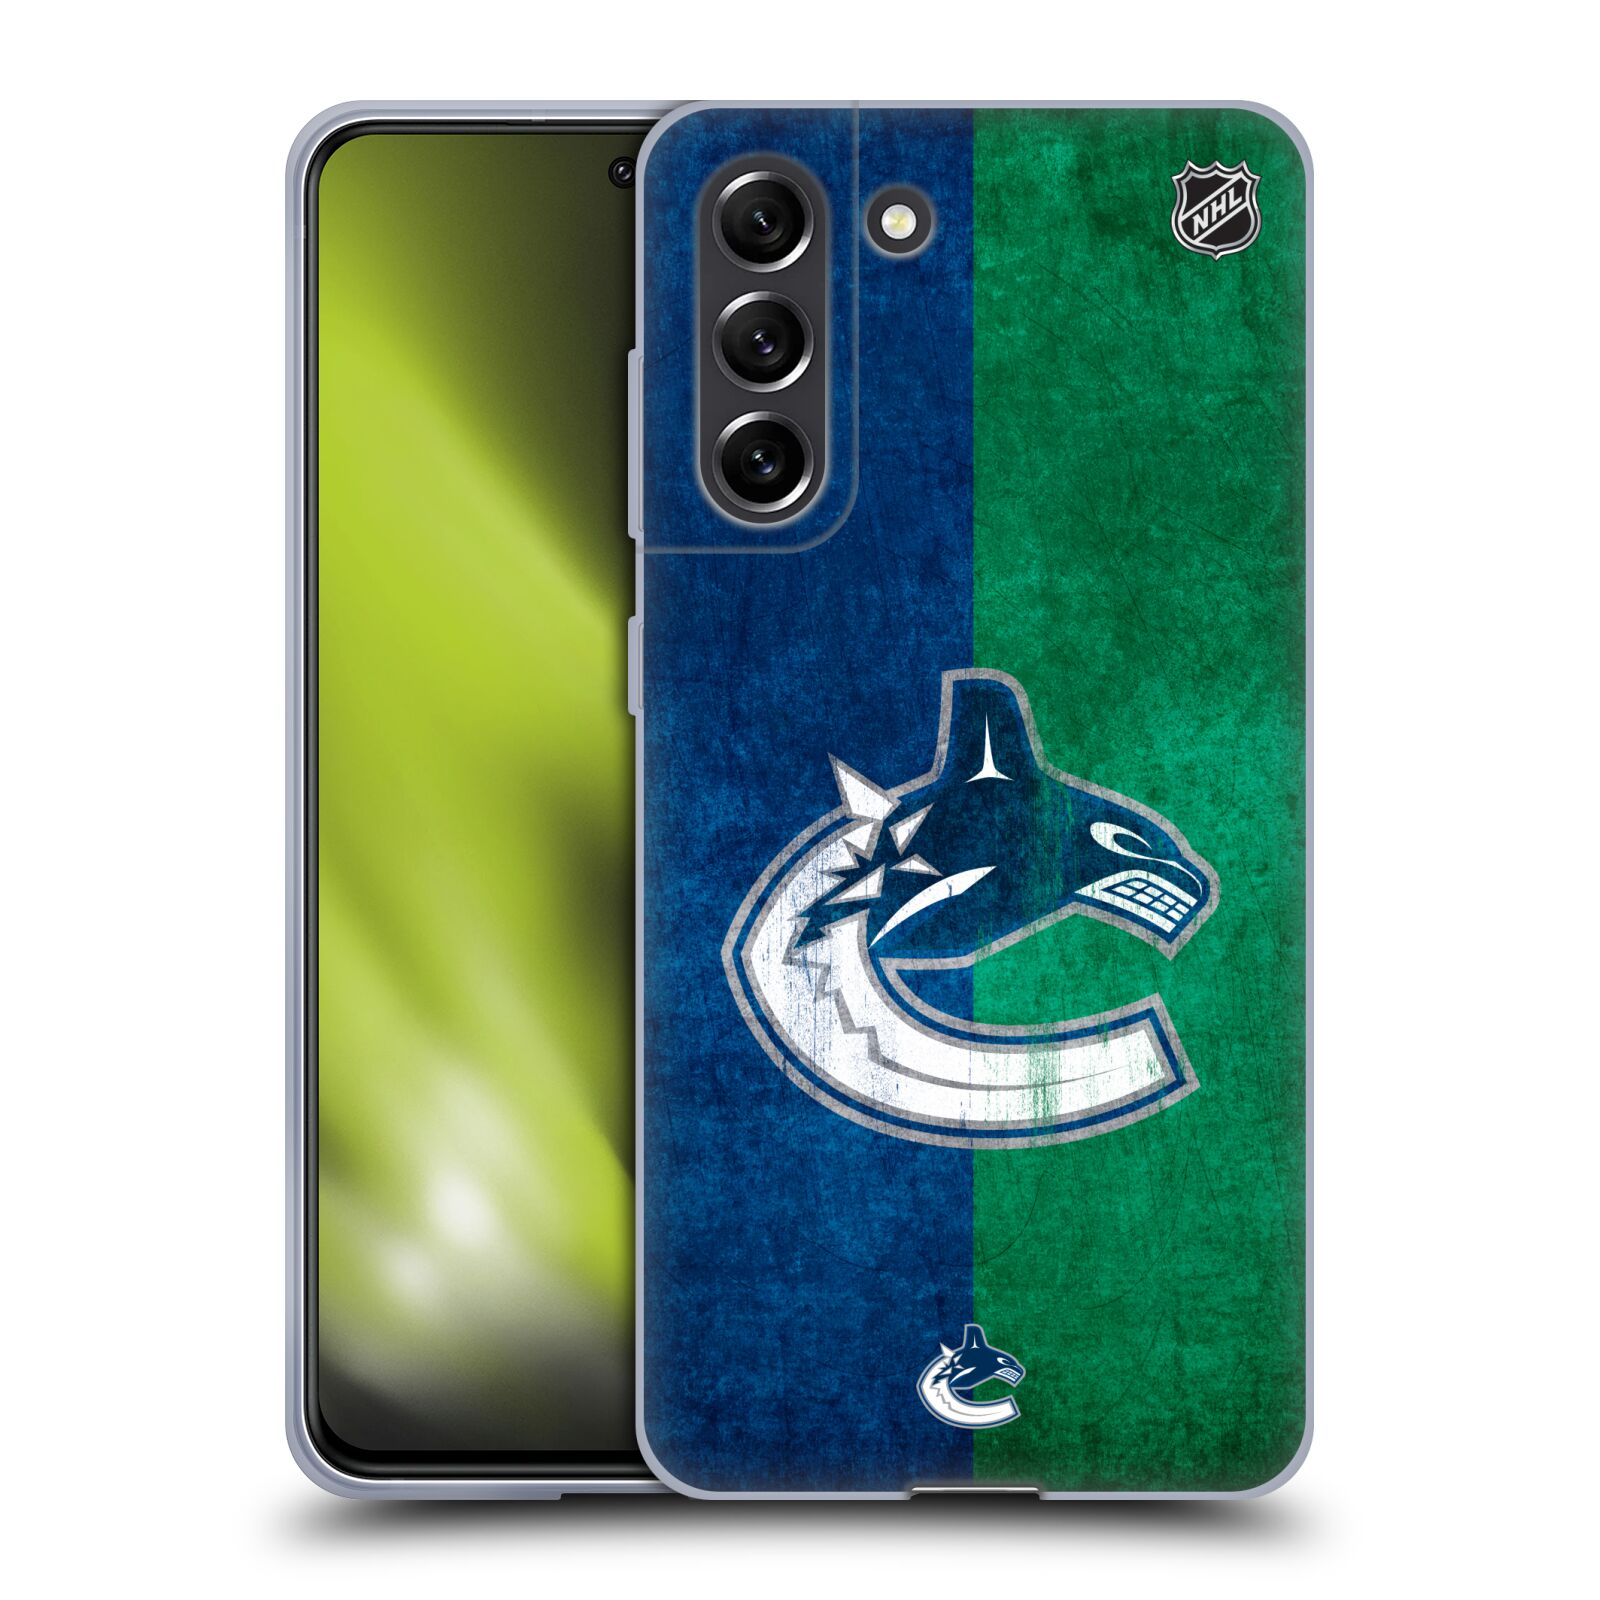 Silikonové pouzdro na mobil Samsung Galaxy S21 FE 5G - NHL - Půlené logo Vancouver Canucks (Silikonový kryt, obal, pouzdro na mobilní telefon Samsung Galaxy S21 FE 5G s licencovaným motivem NHL - Půlené logo Vancouver Canucks)